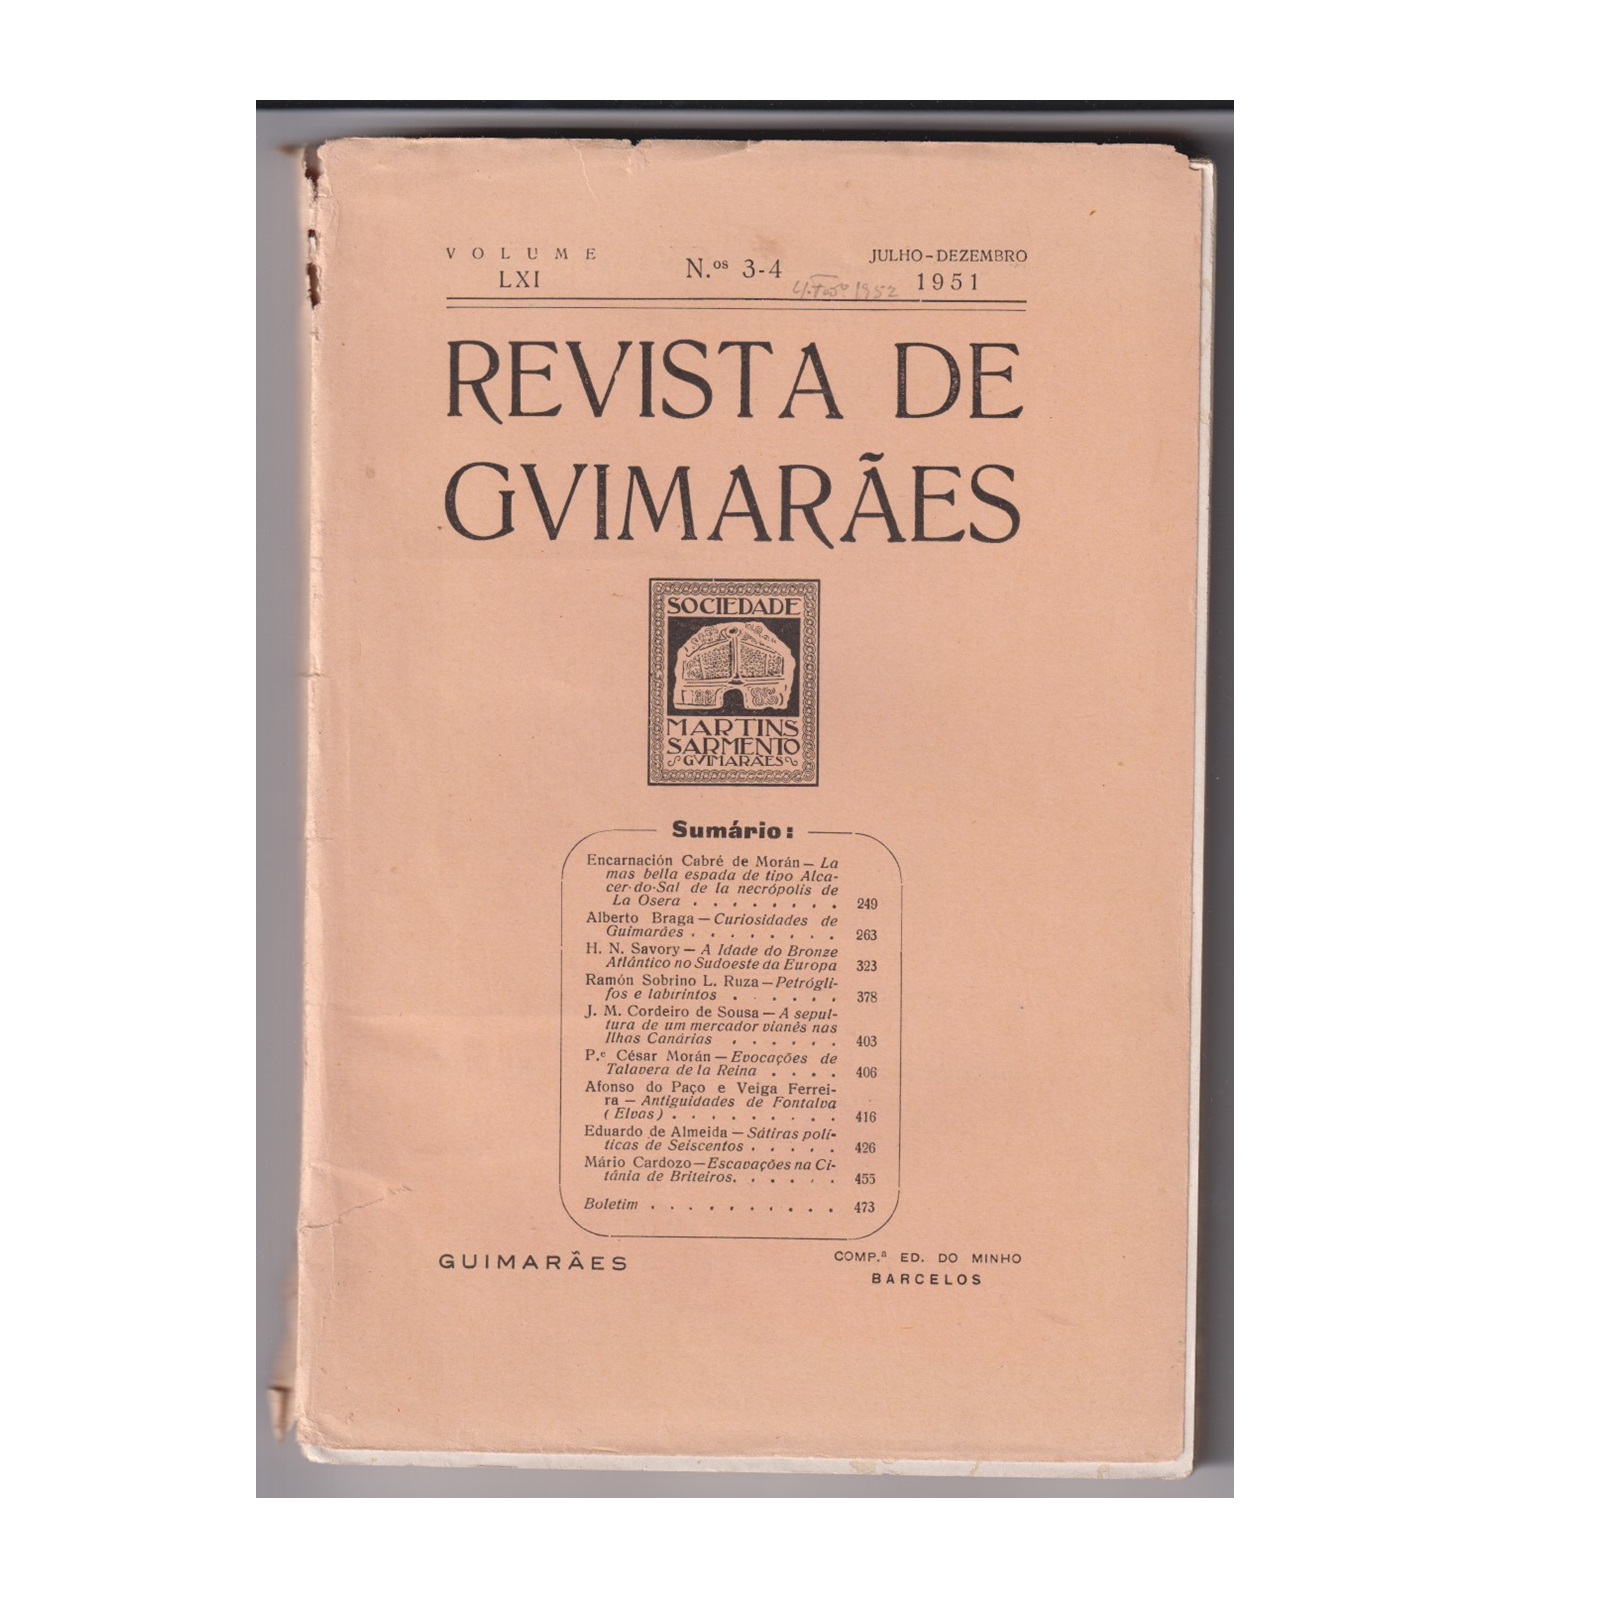 REVISTA DE GUIMARÃES. VOL. LXI. N.º 3-4, 1951